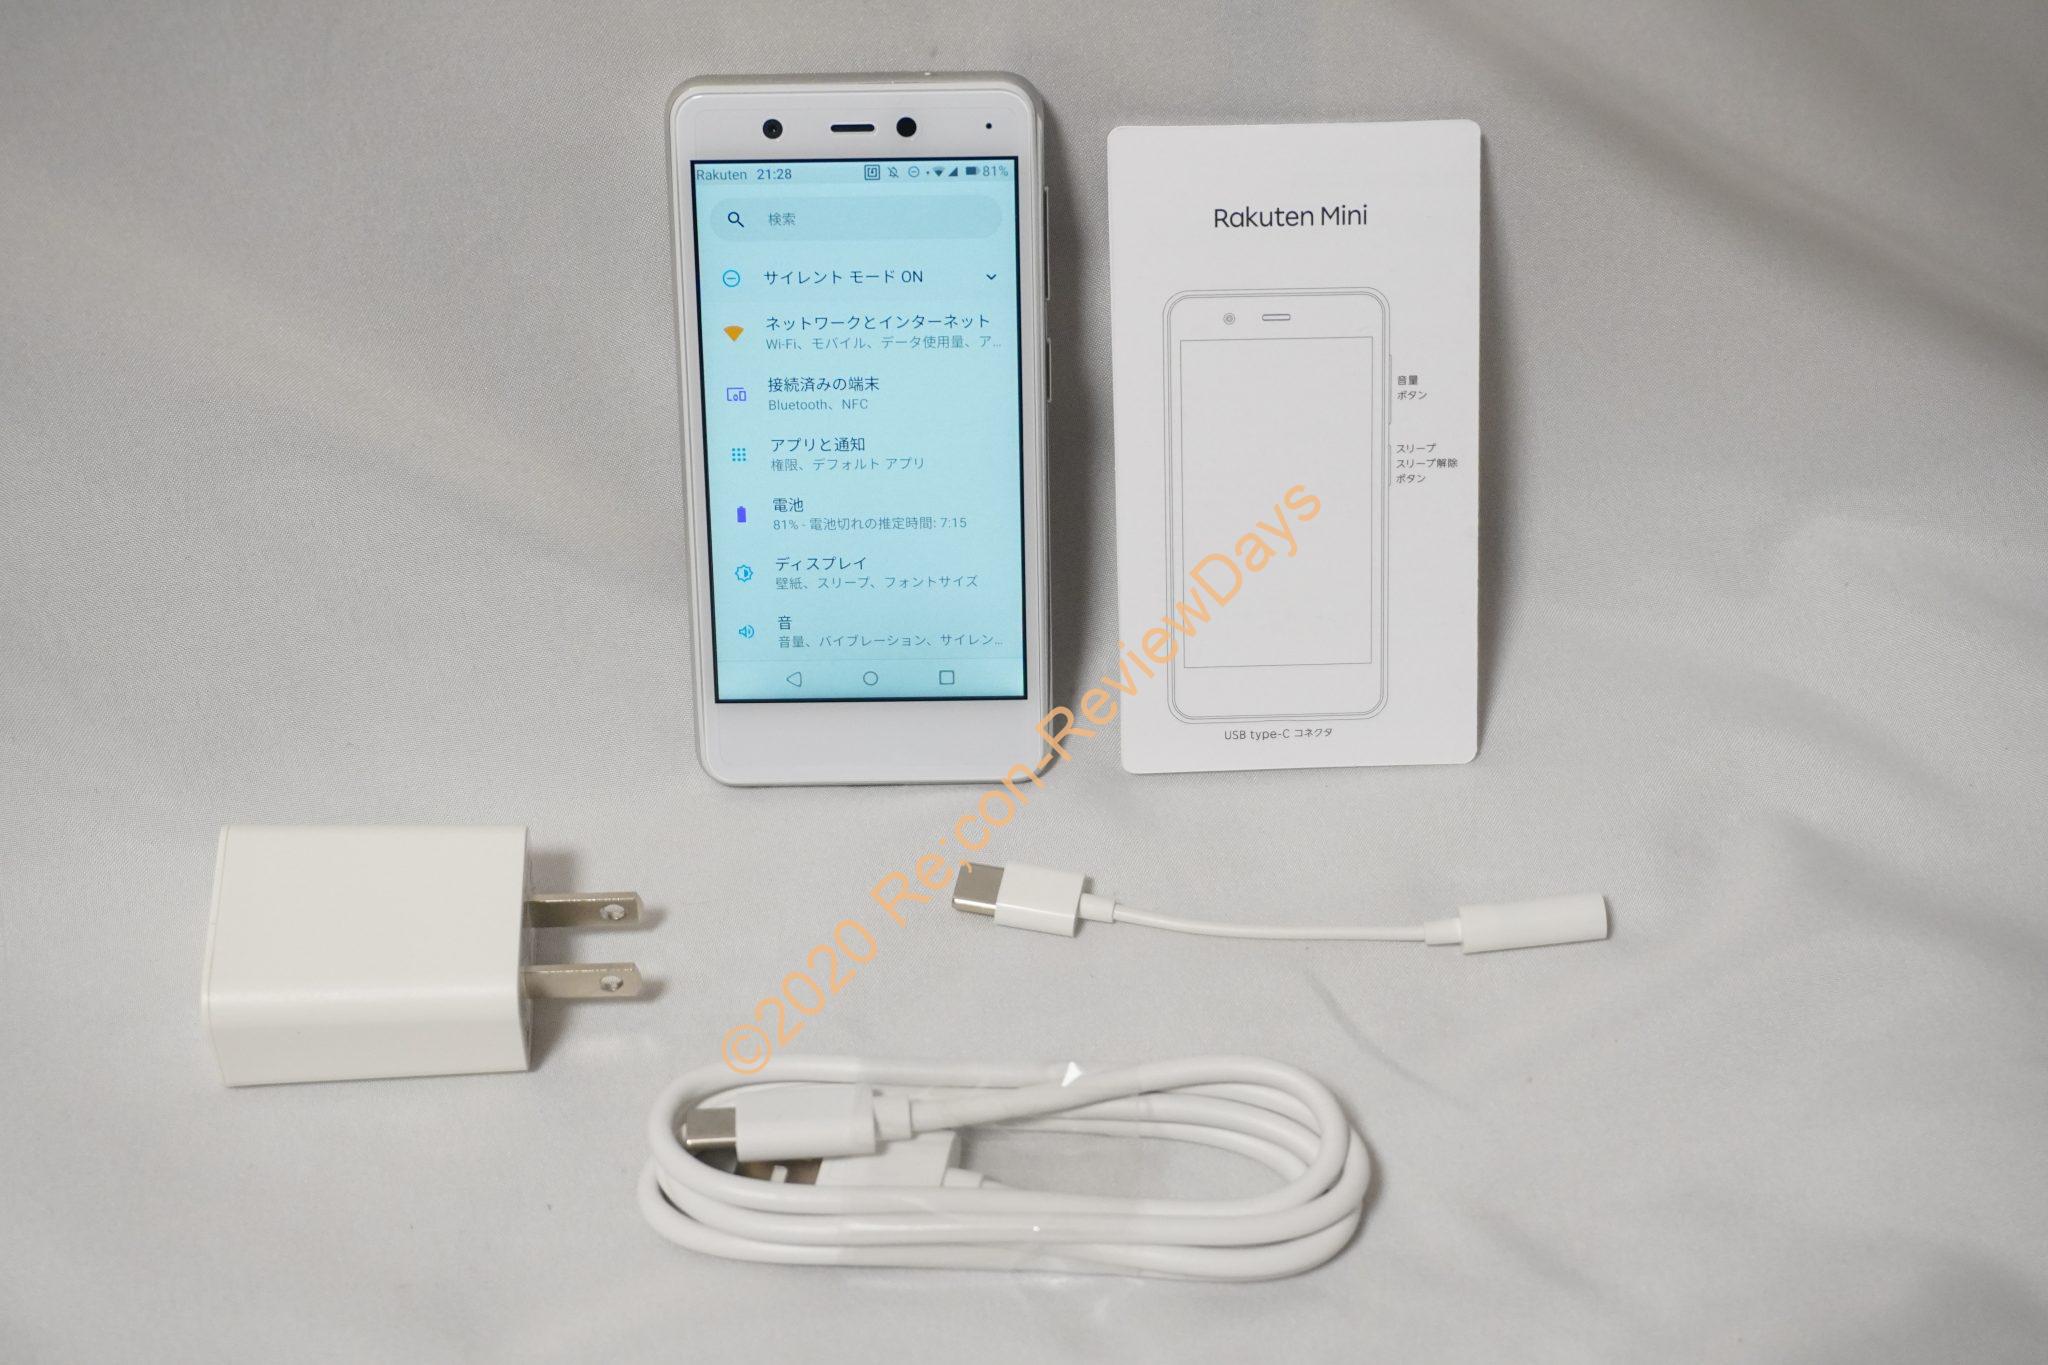 楽天モバイル製の超小型esim対応スマートフォン Rakuten Mini レビュー 楽天モバイル Rakutenmini Esim Recon Reviewdays